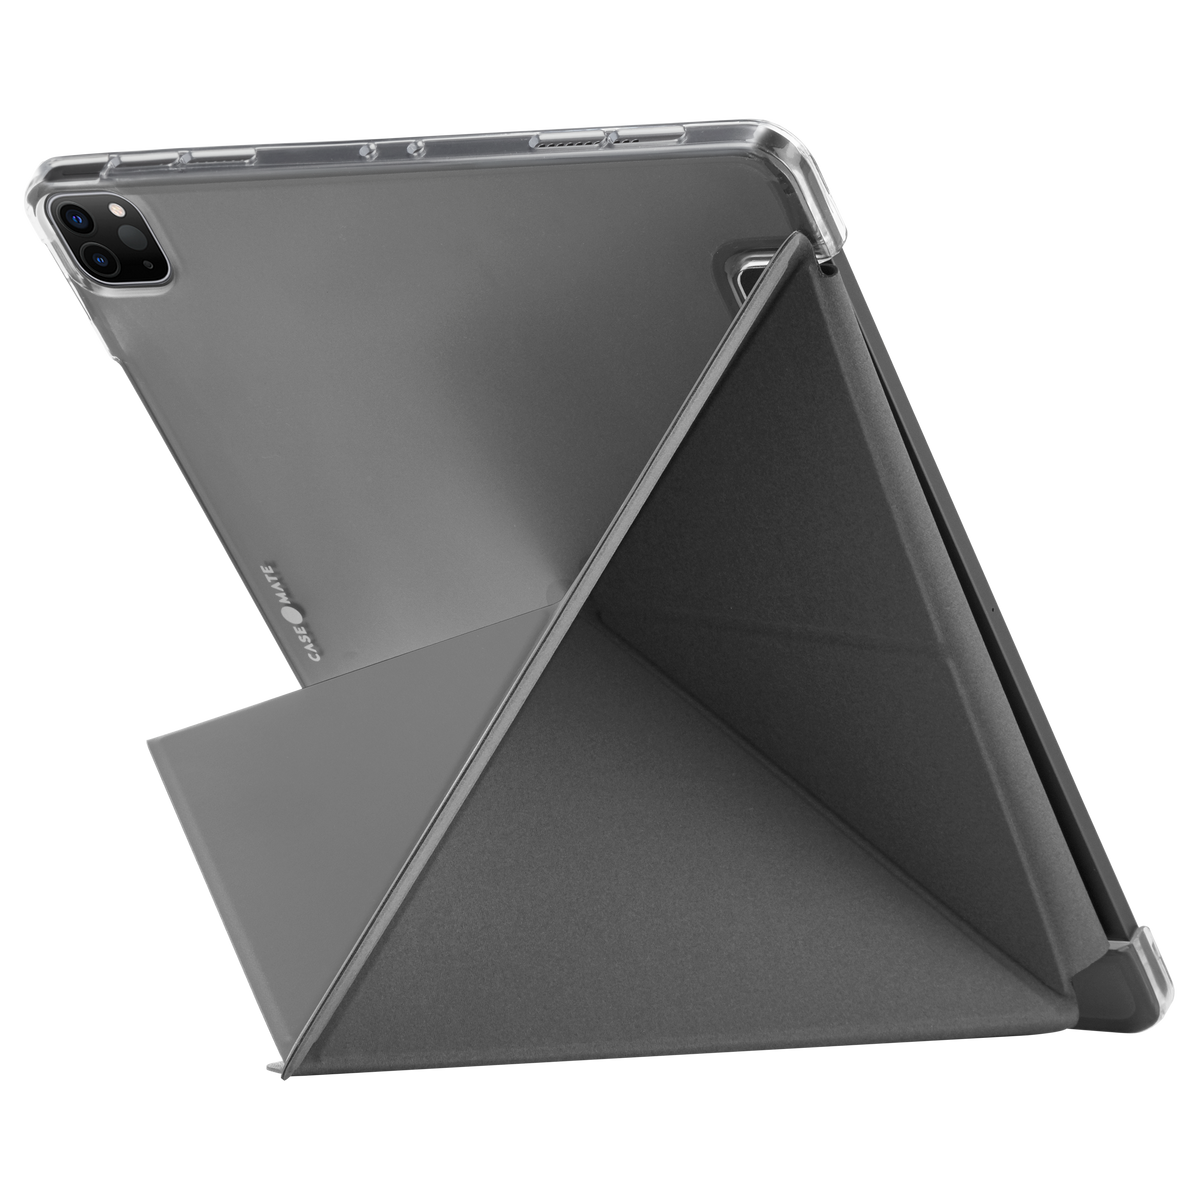 CASE-MATE Multi Stand Folio Case for iPad Pro 12.9&quot; 5th Gen. 2021 - Gray